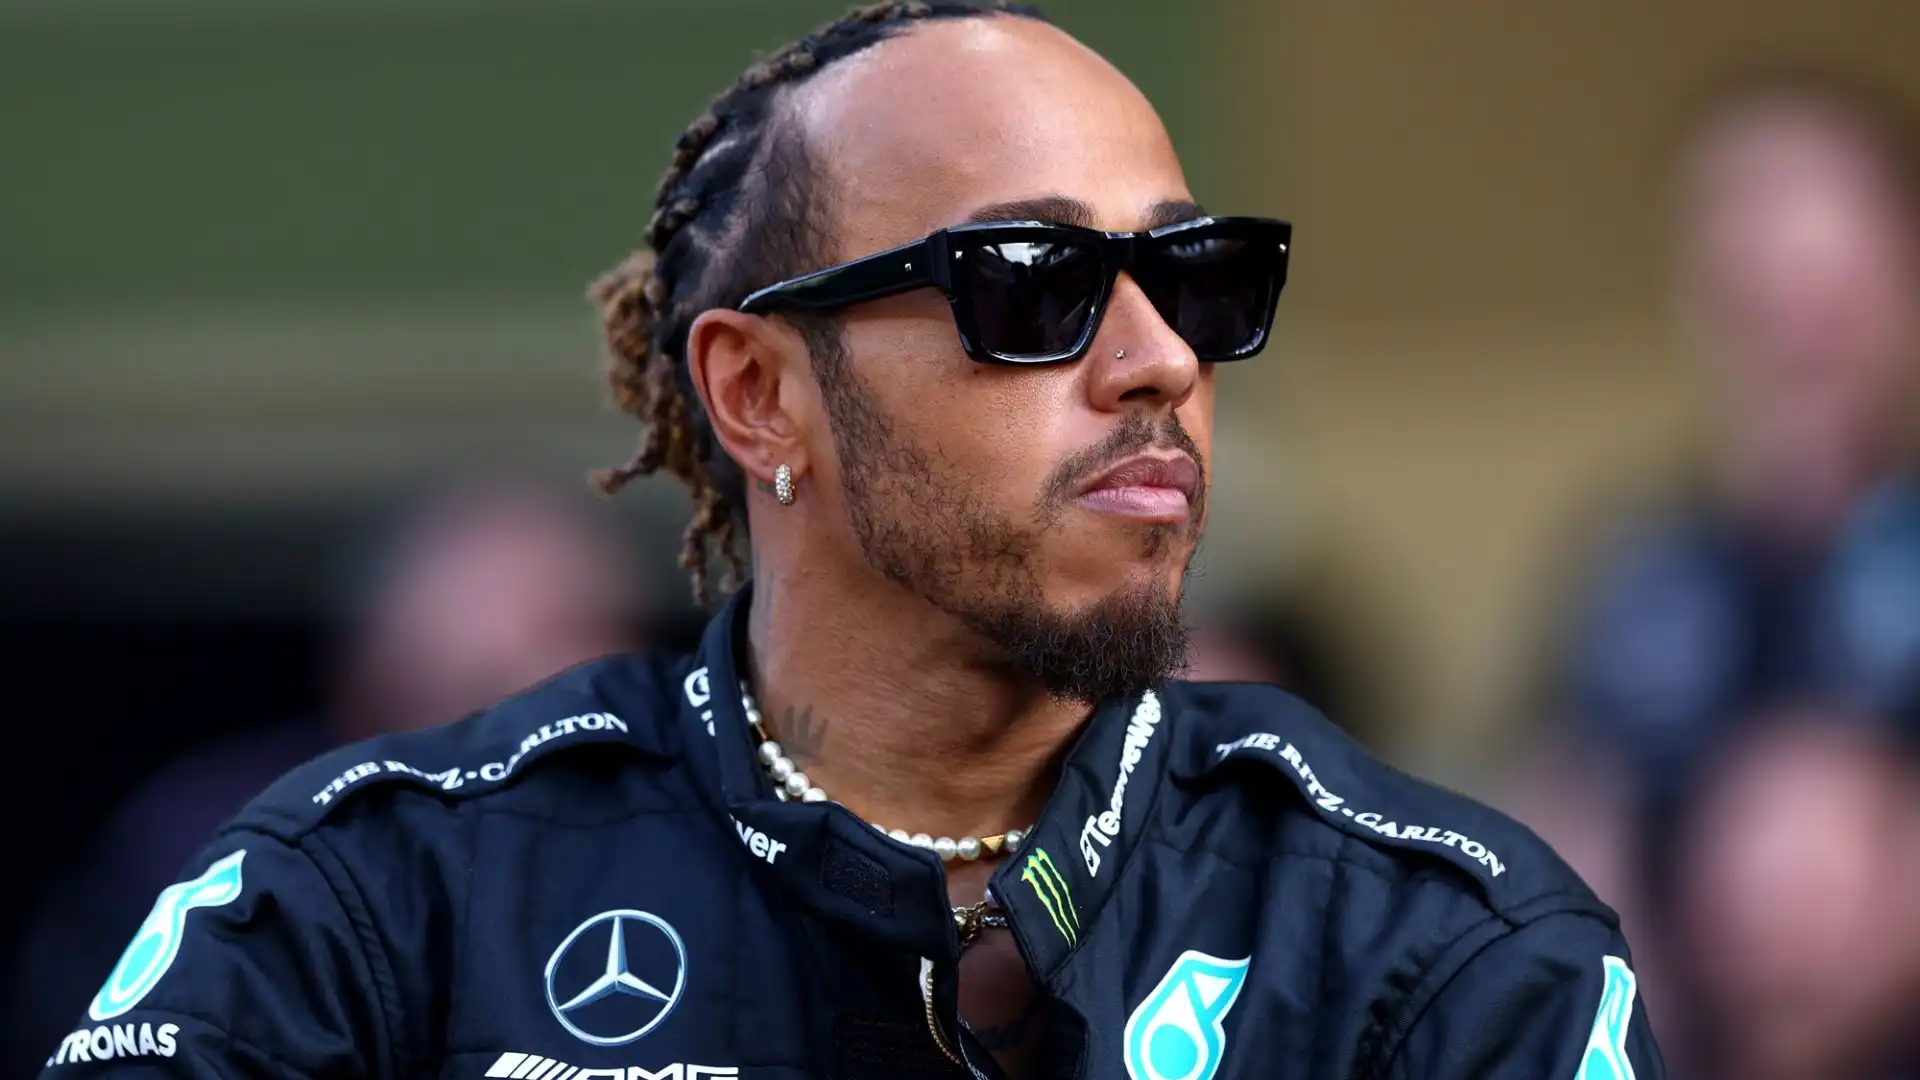 Hamilton però ha deciso di rinnovare il contratto con la Mercedes e di continuare a correre oltre i 40 anni: "Amo ancora questo sport"